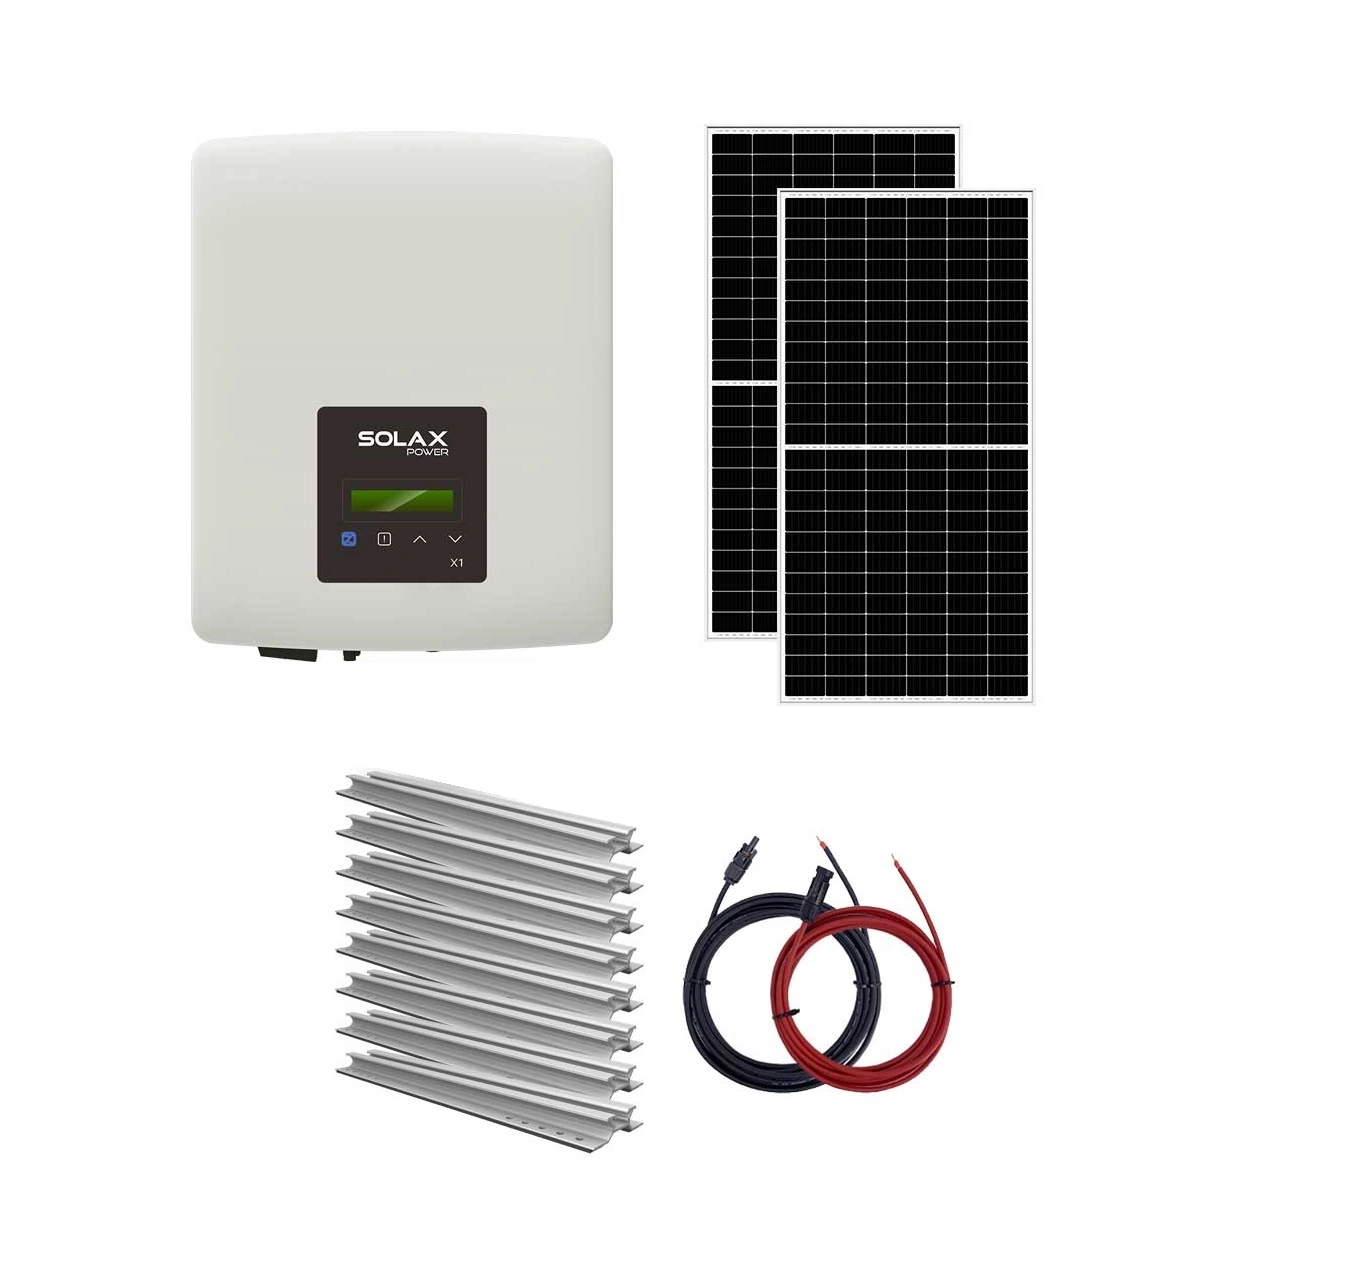 Sisteme fotovoltaice on-grid - Sistem fotovoltaic On-Grid 3 kW monofazat Solax - tigla, climasoft.ro